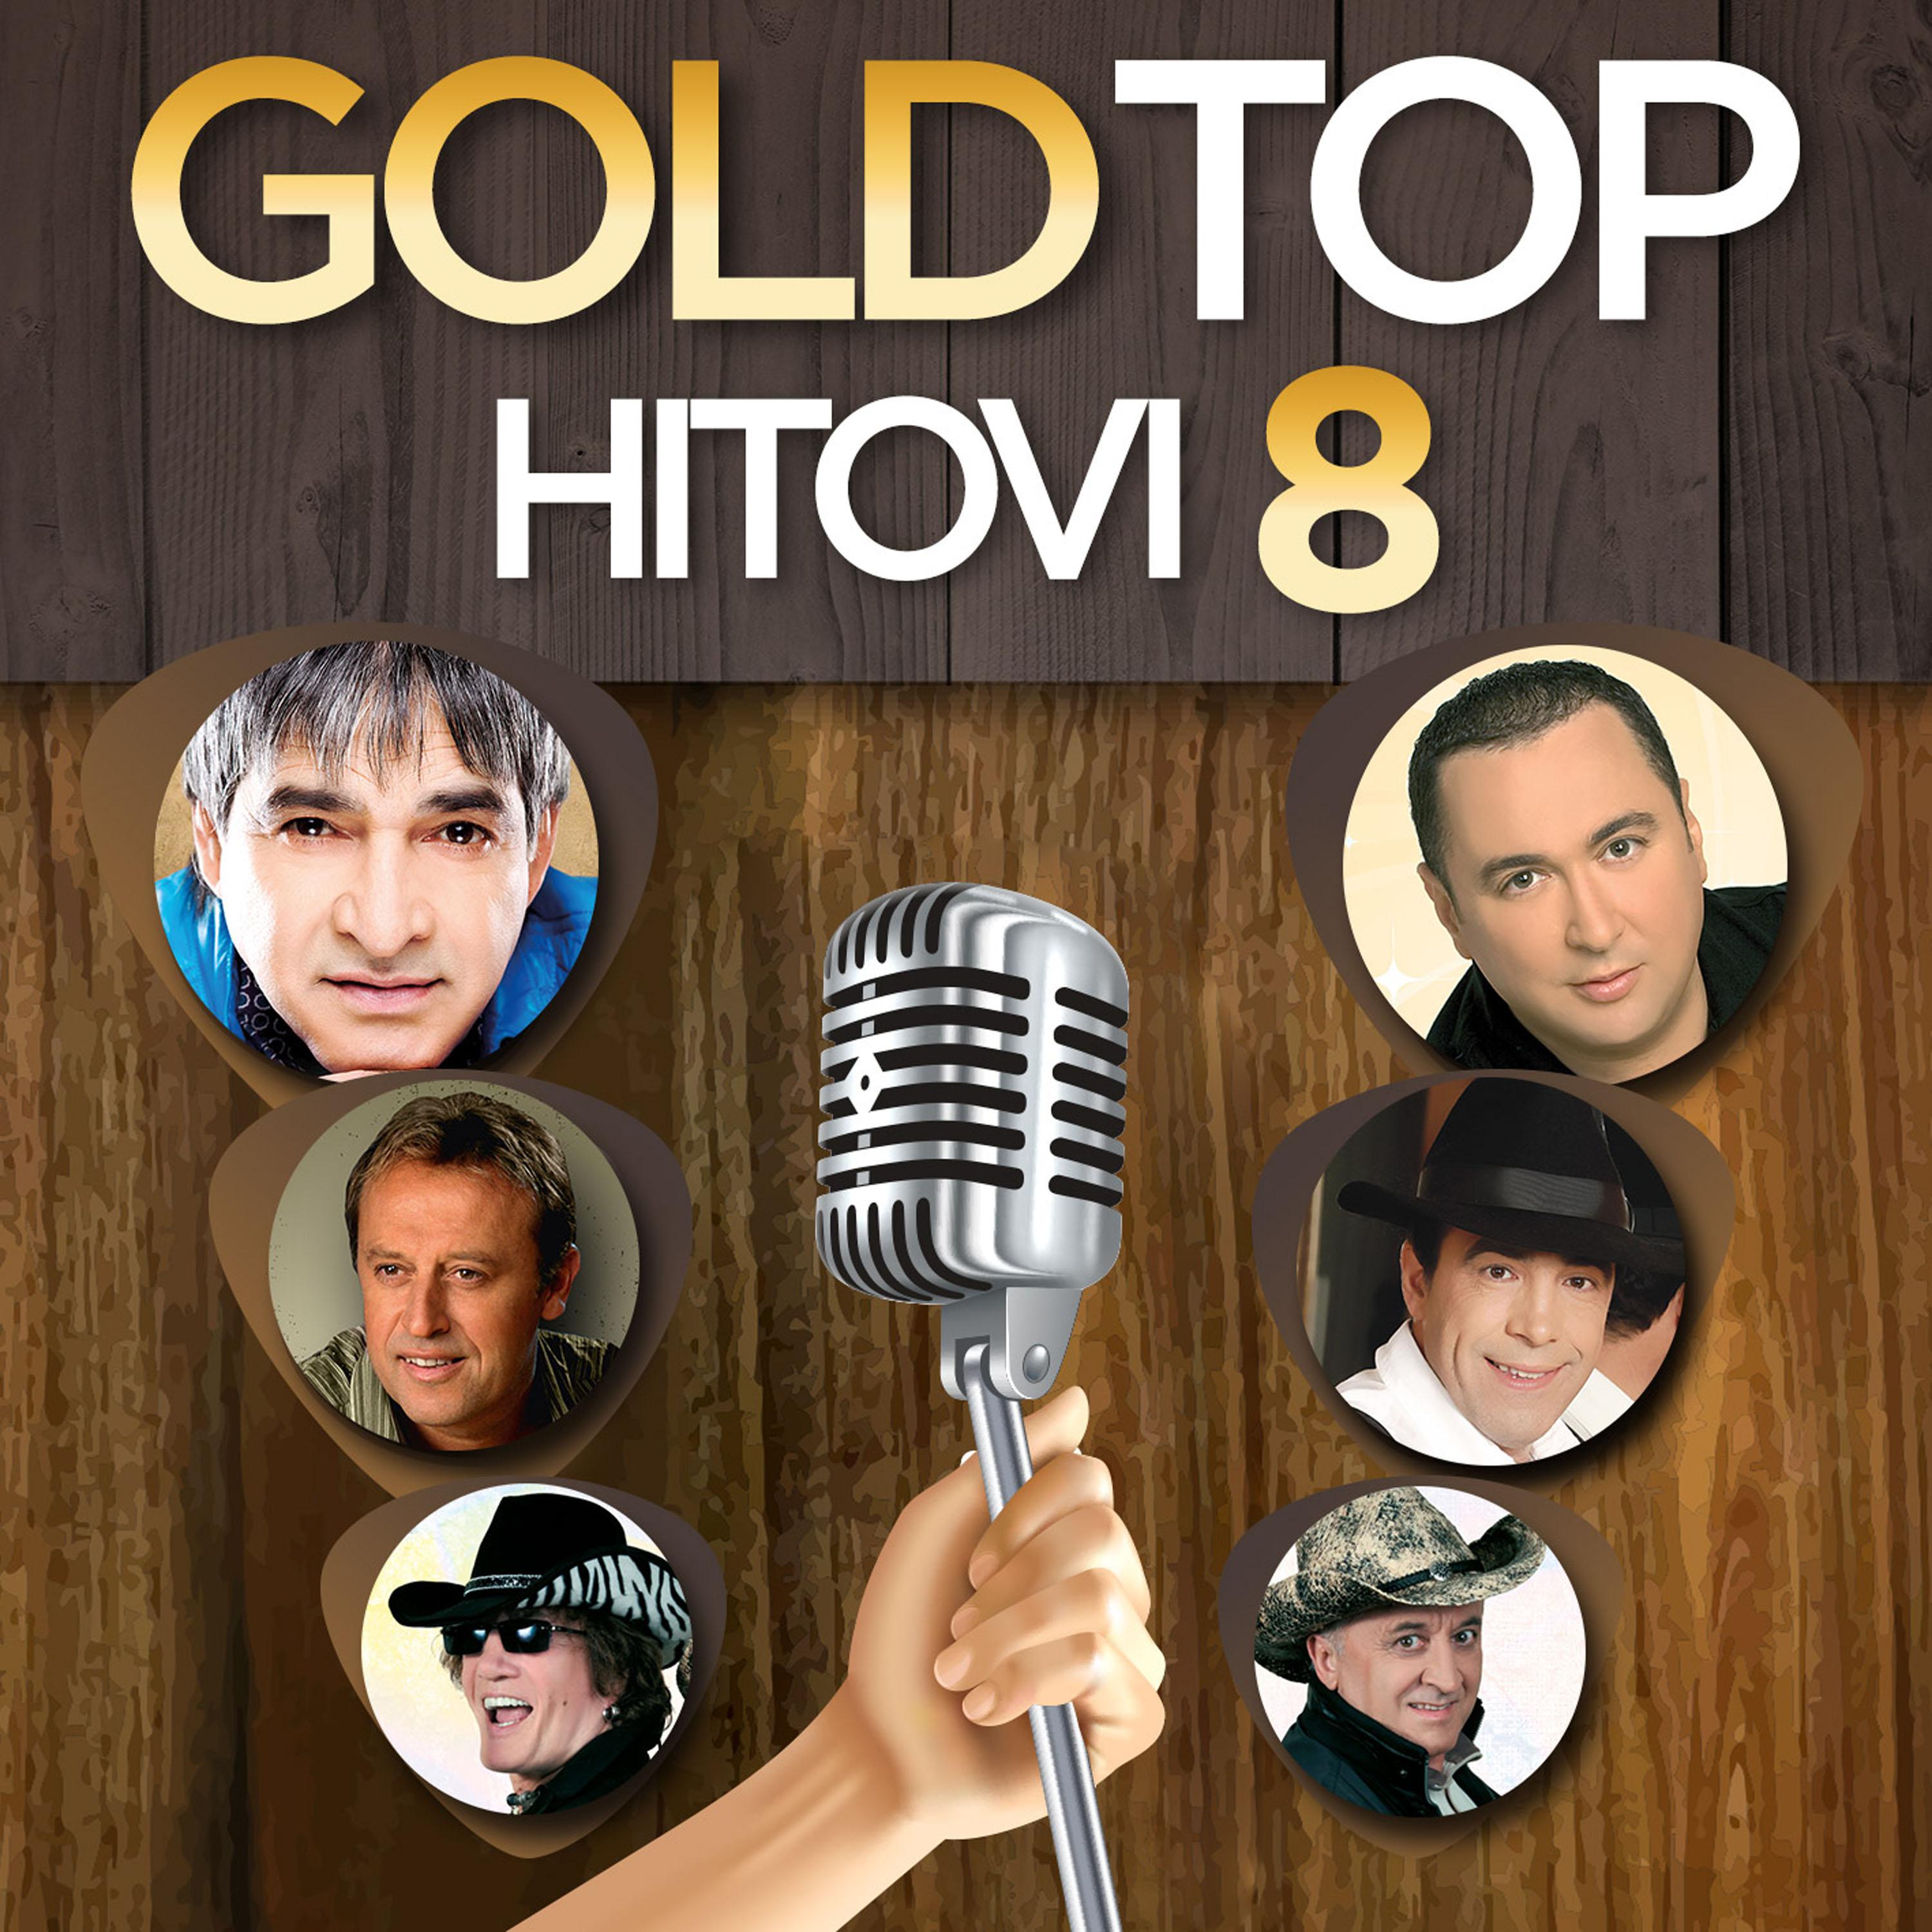 Gold top hitovi 8